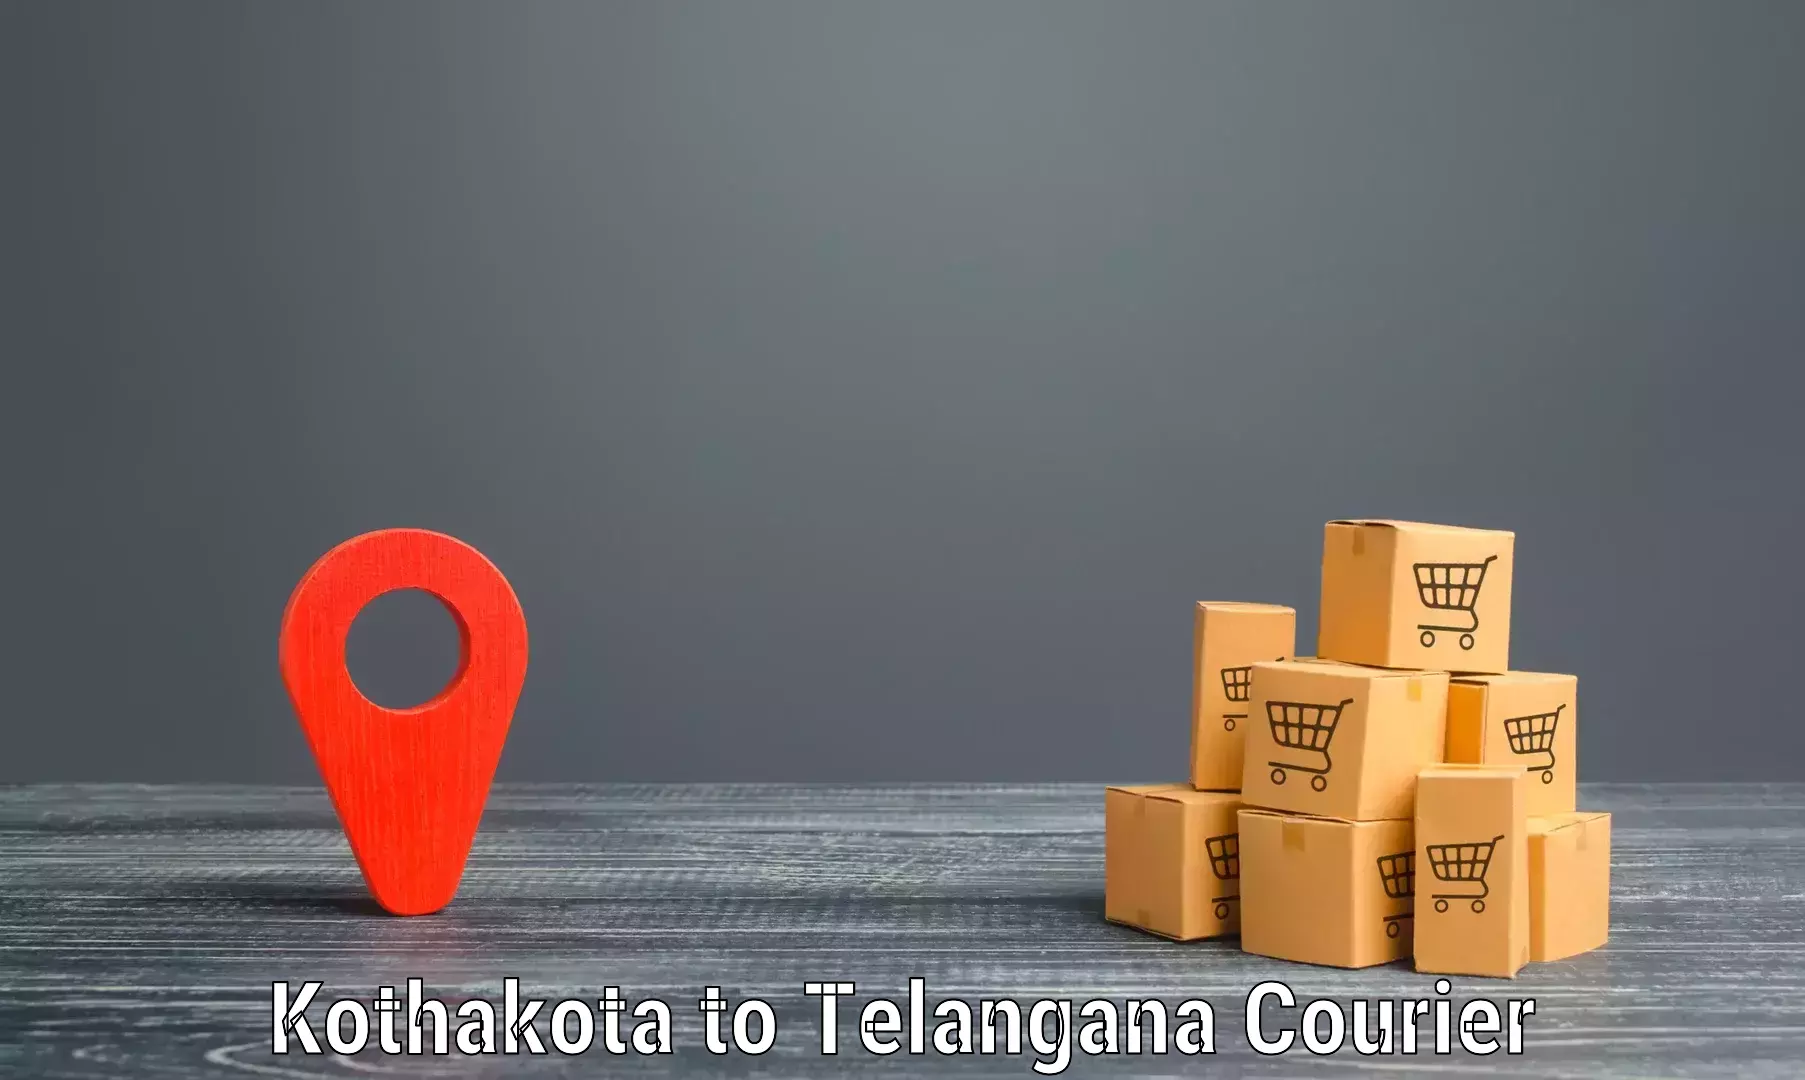 Efficient shipping platforms Kothakota to Peddapalli